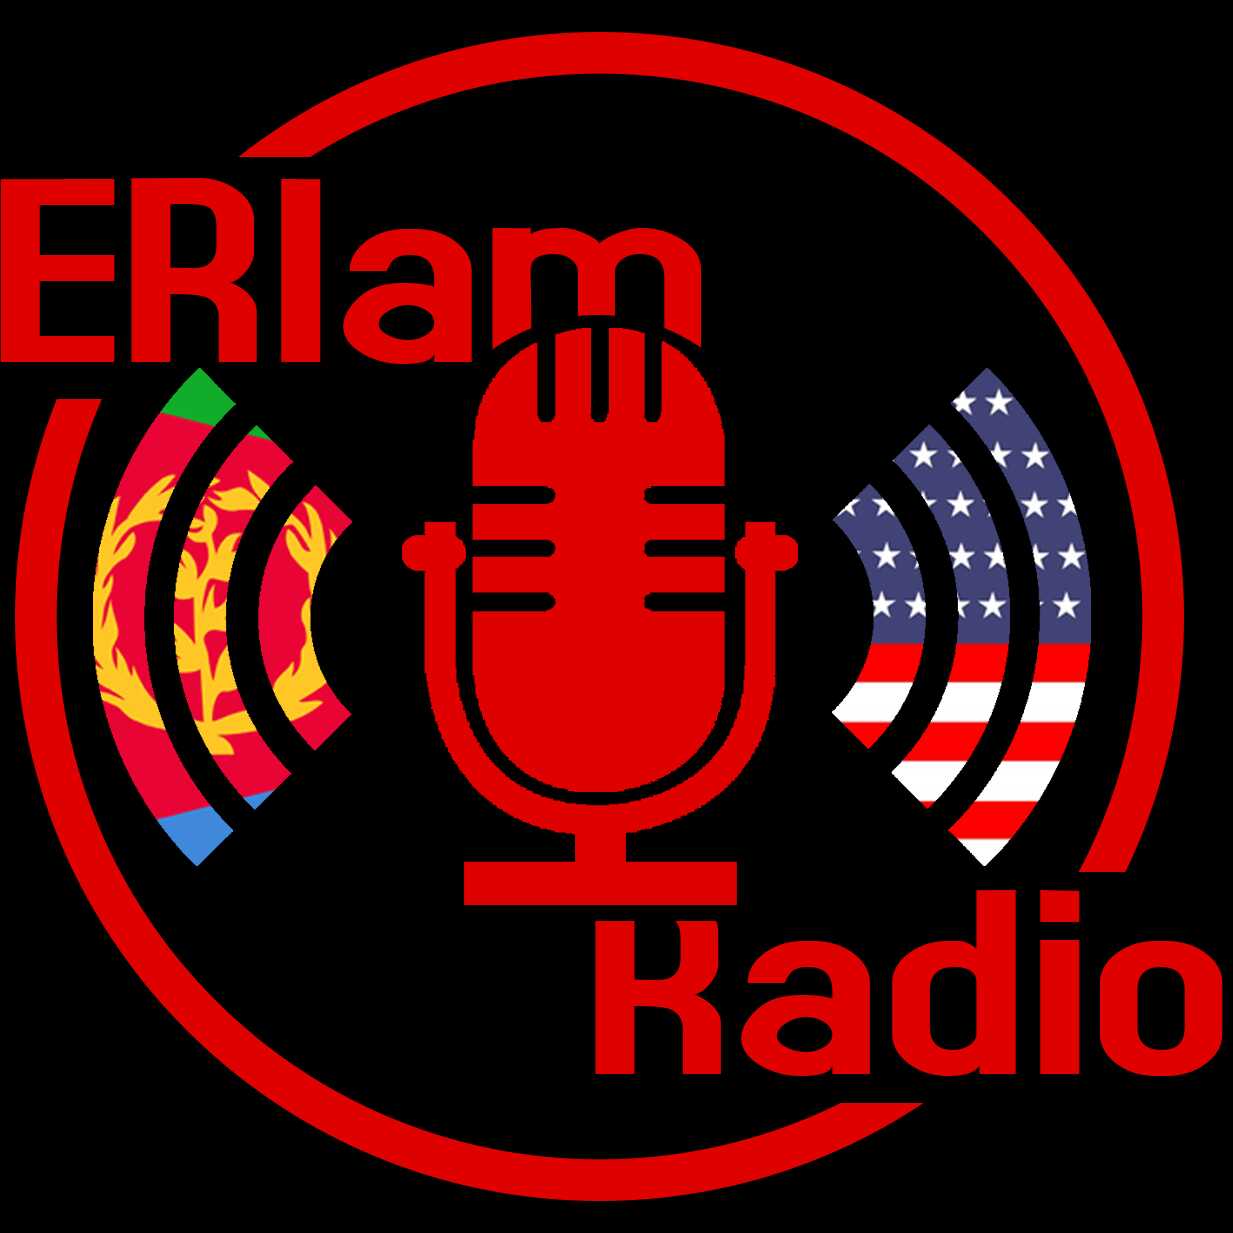 ERIam Podcast - Episode 2